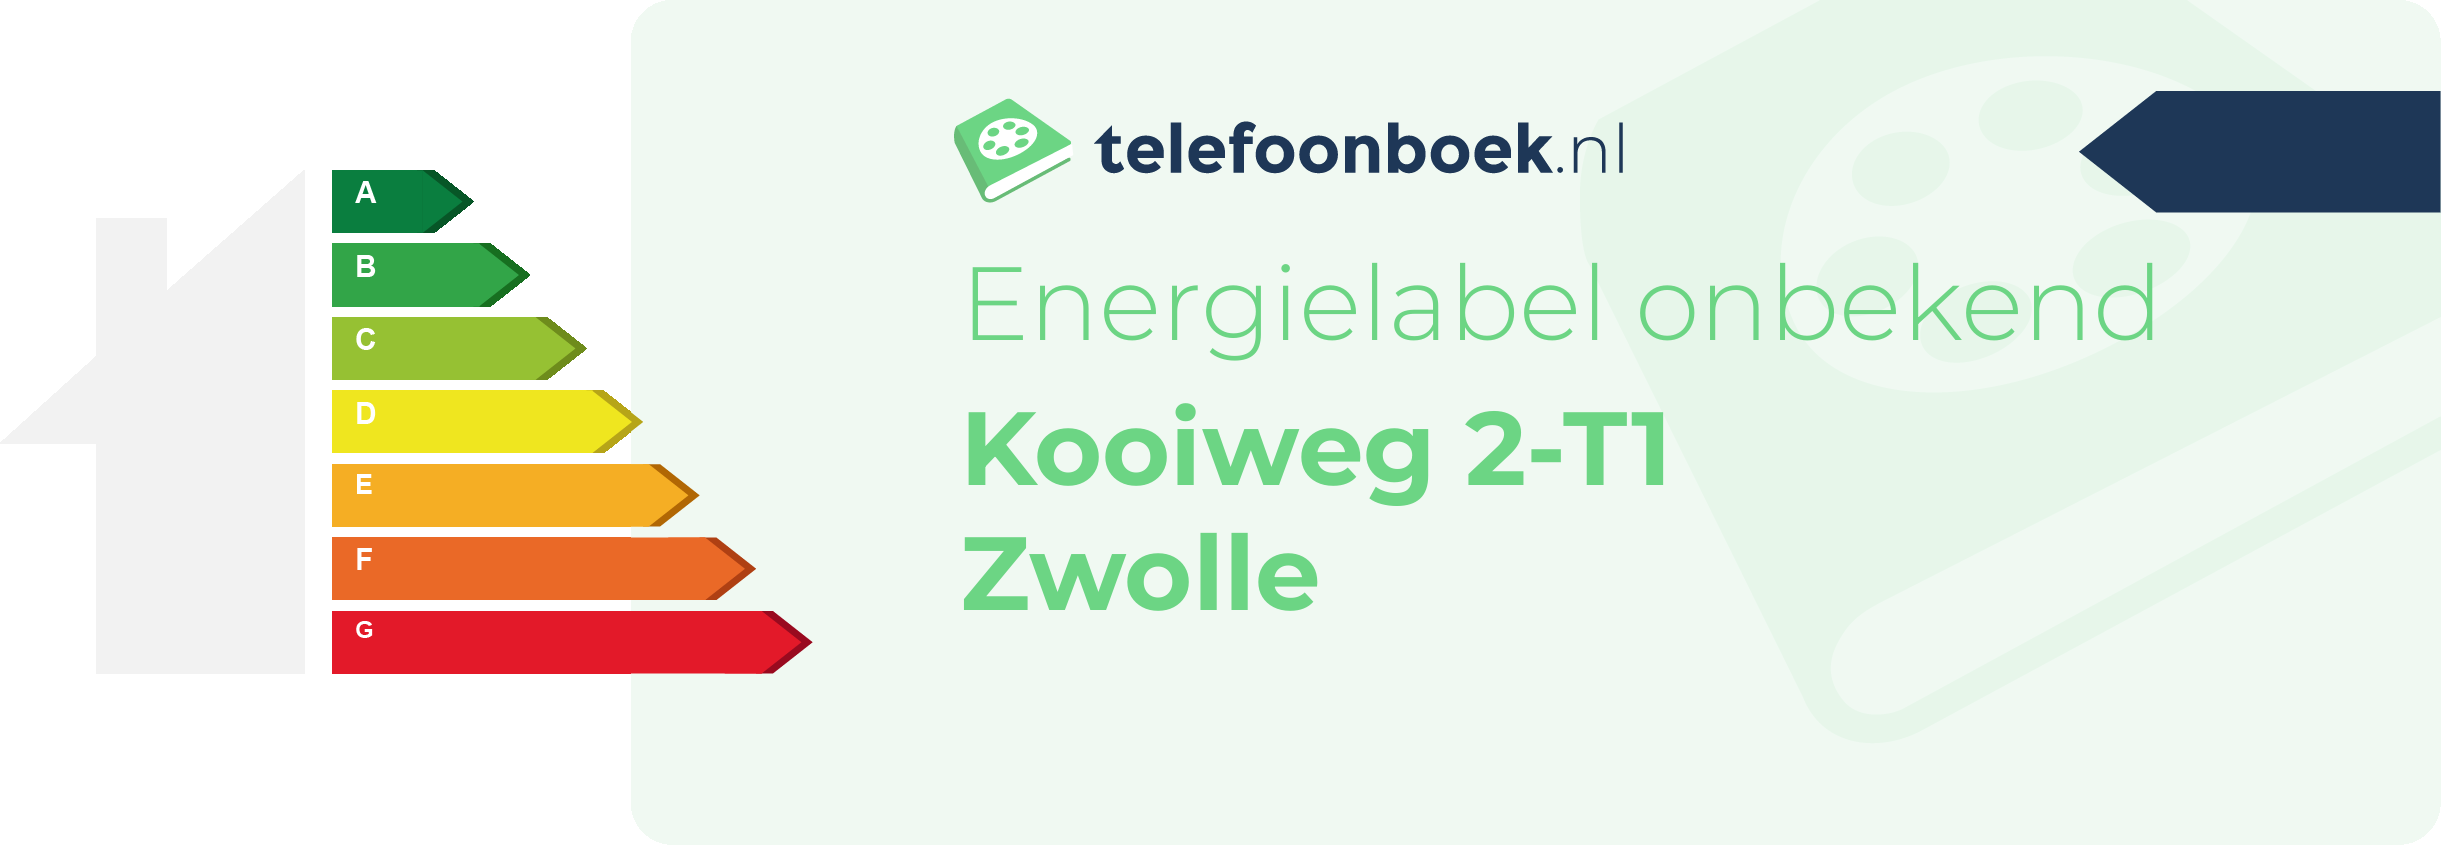 Energielabel Kooiweg 2-T1 Zwolle